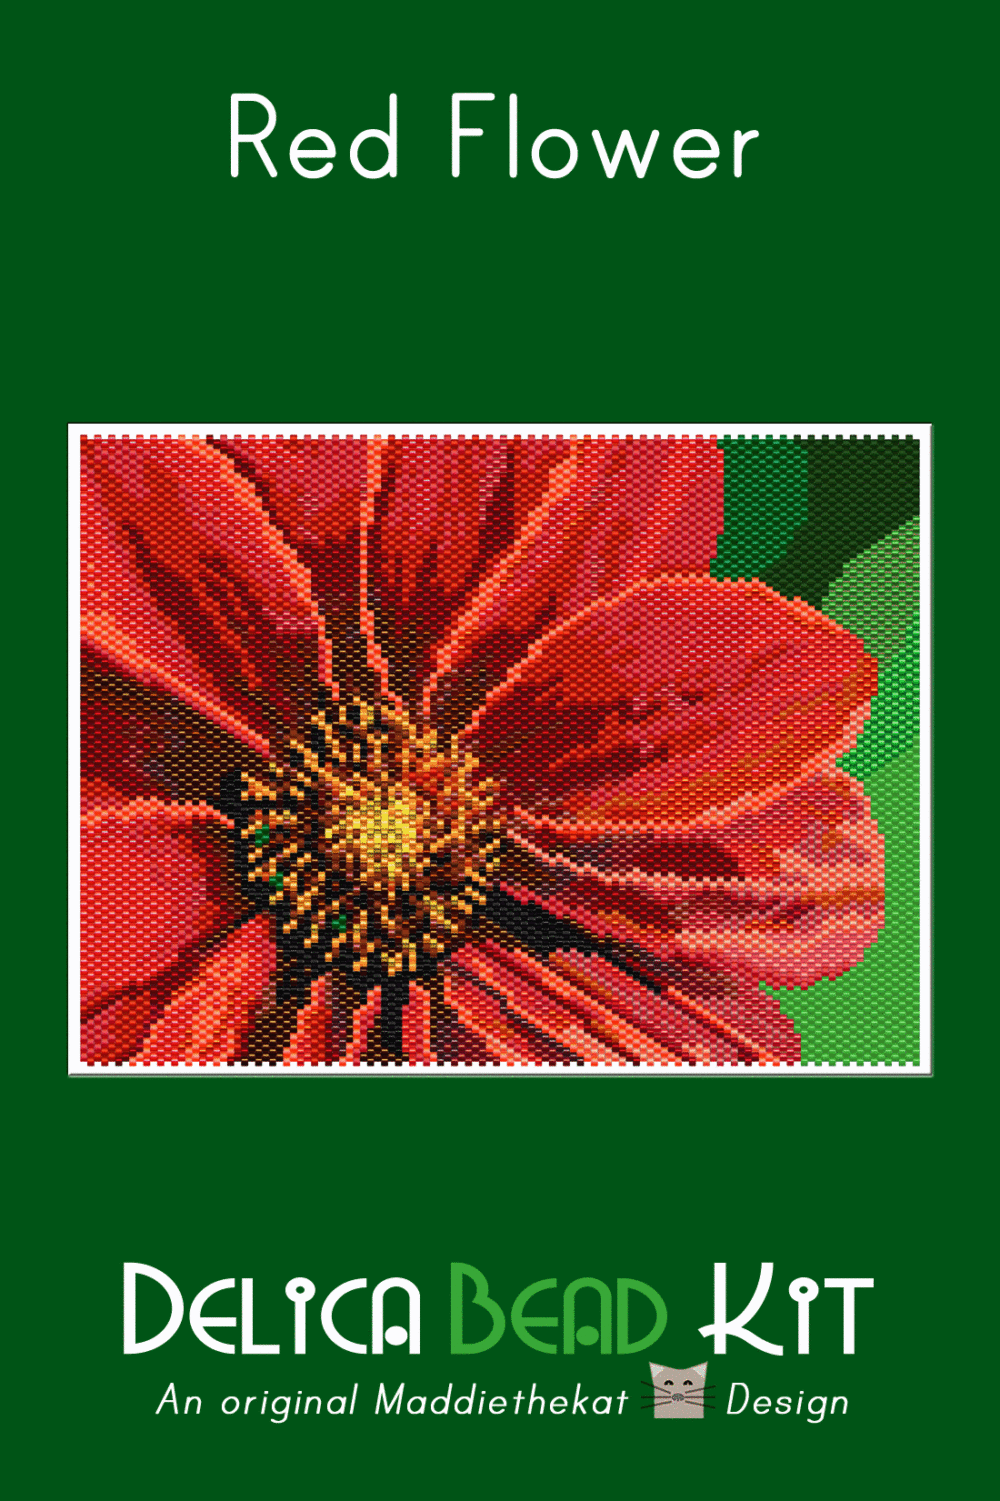 Red Flower Larger Peyote Bead Pattern PDF or Bead Kit